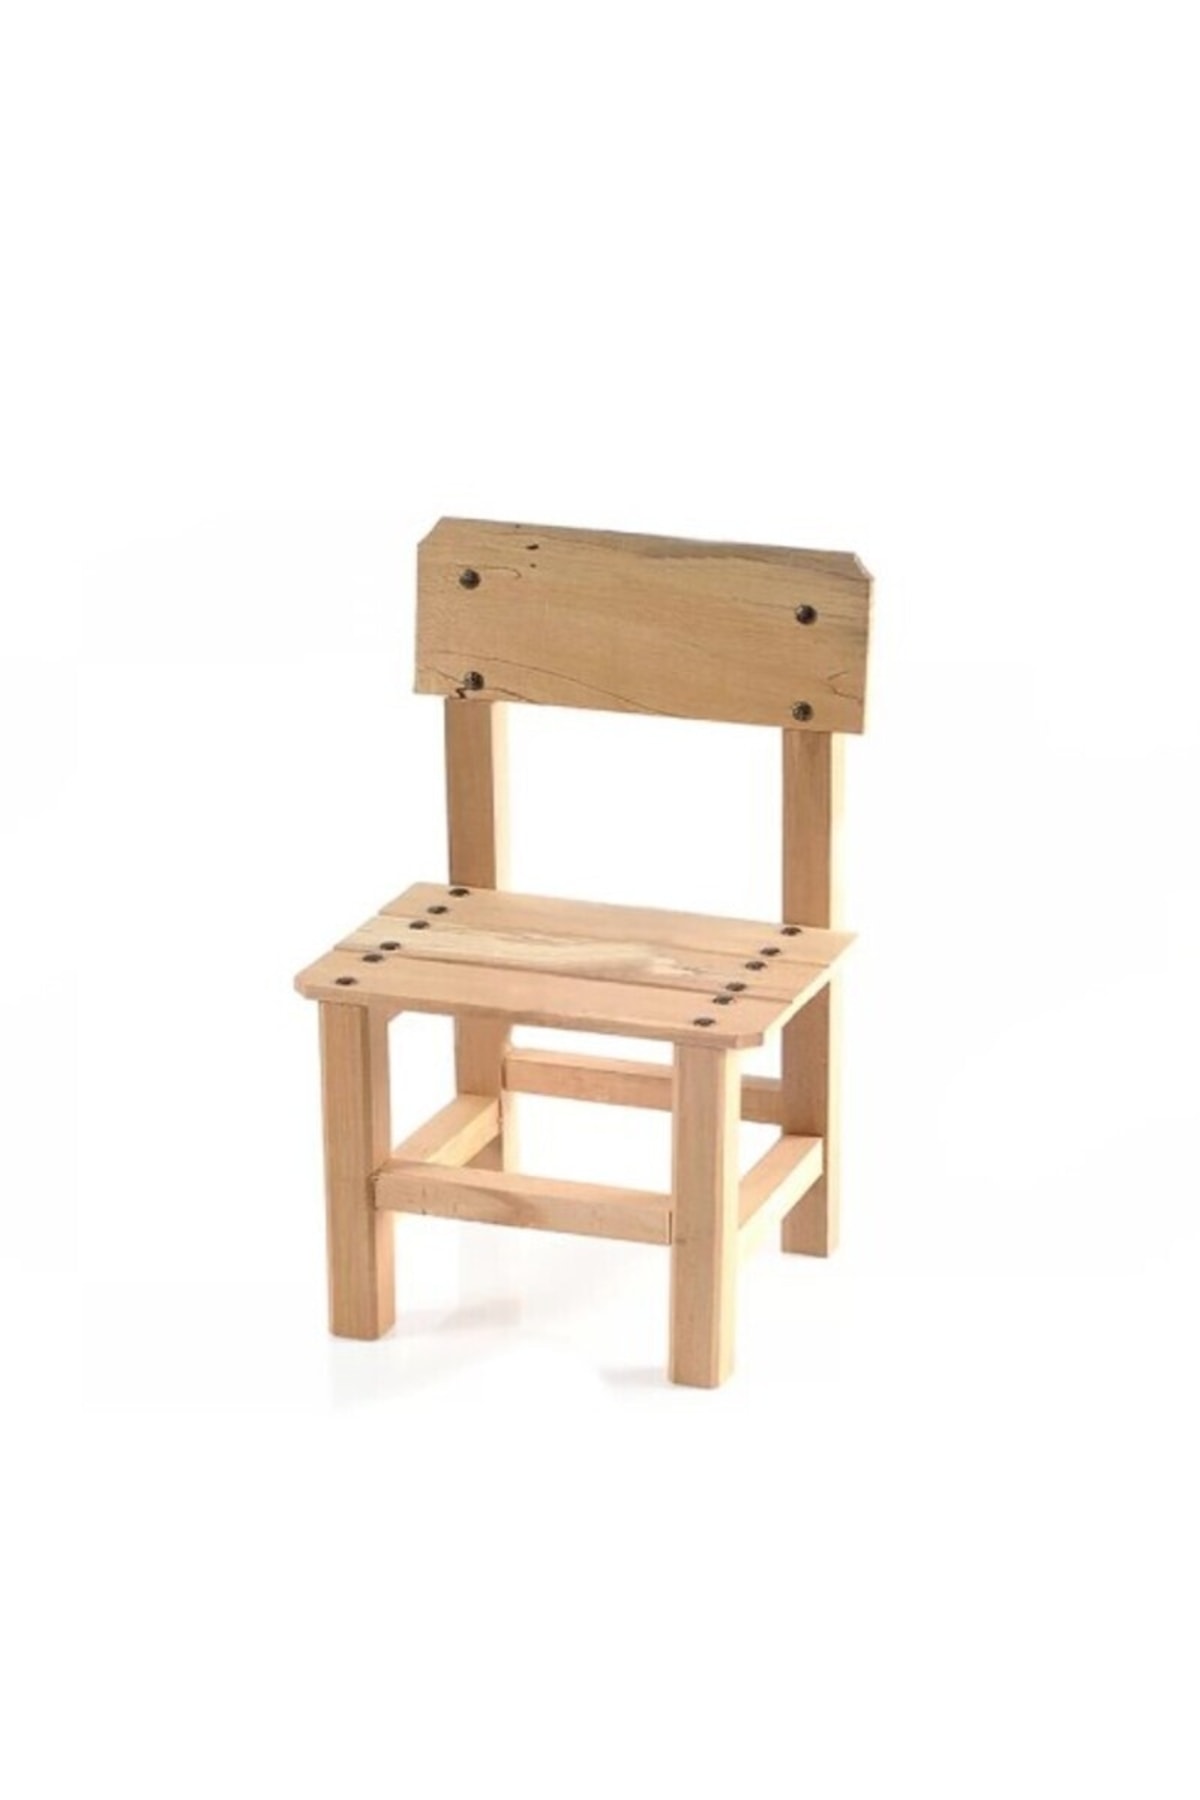 estoes design Çocuk Sandalye Çocuk Çalışma Çocuk Oyun Aktivite Sandalye Anaokul Kreş